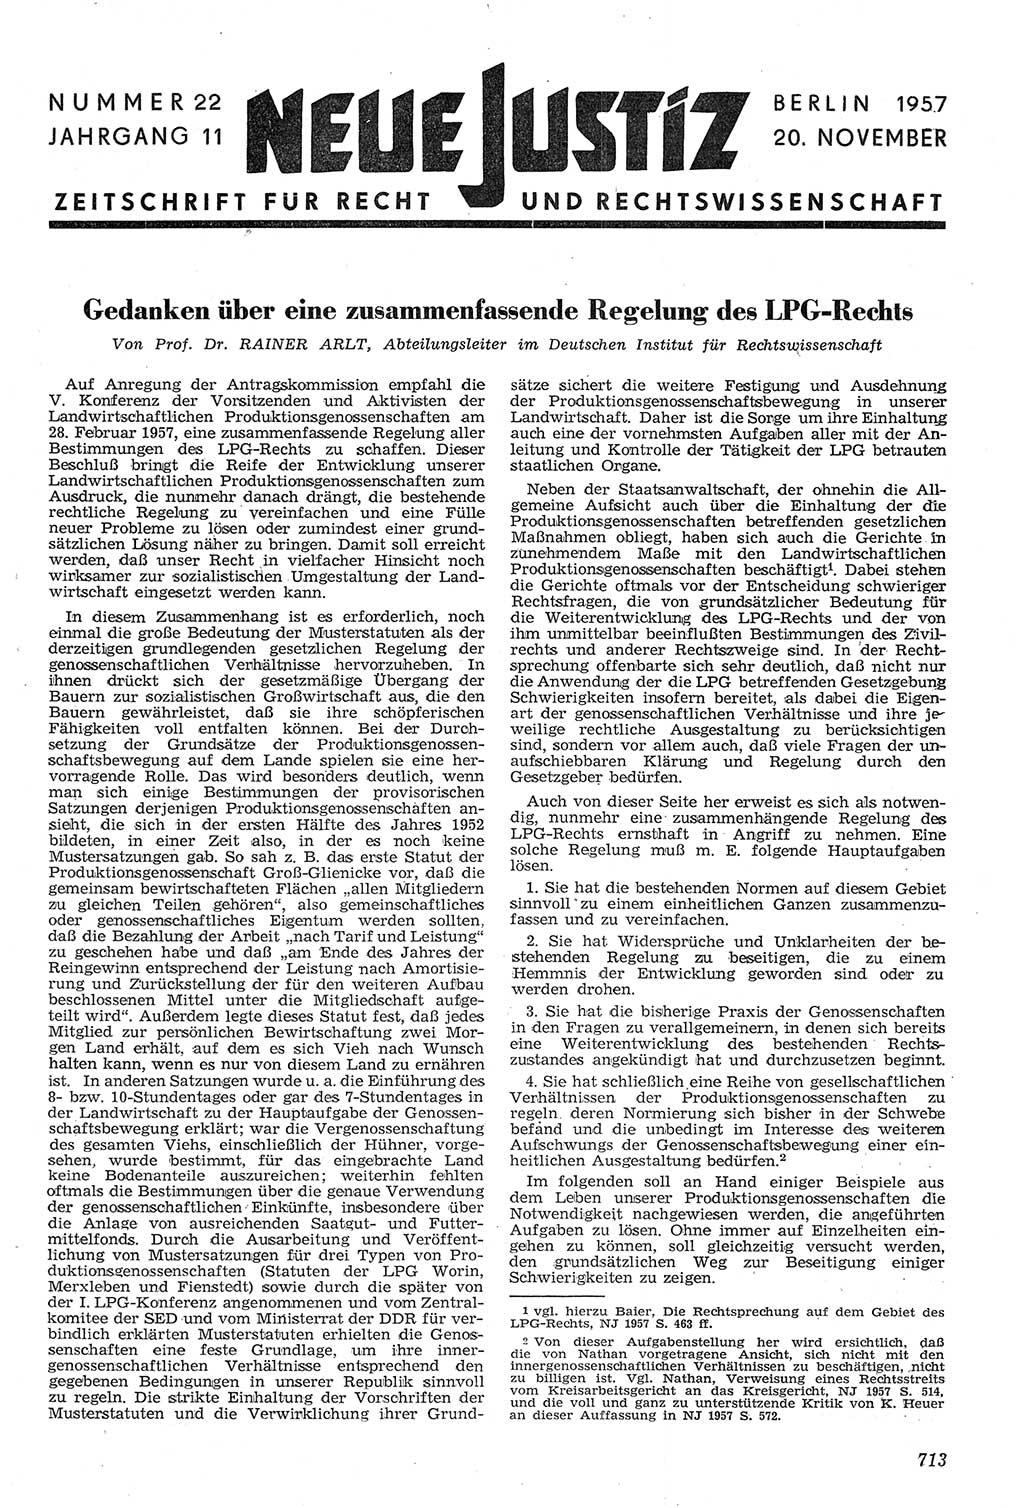 Neue Justiz (NJ), Zeitschrift für Recht und Rechtswissenschaft [Deutsche Demokratische Republik (DDR)], 11. Jahrgang 1957, Seite 713 (NJ DDR 1957, S. 713)